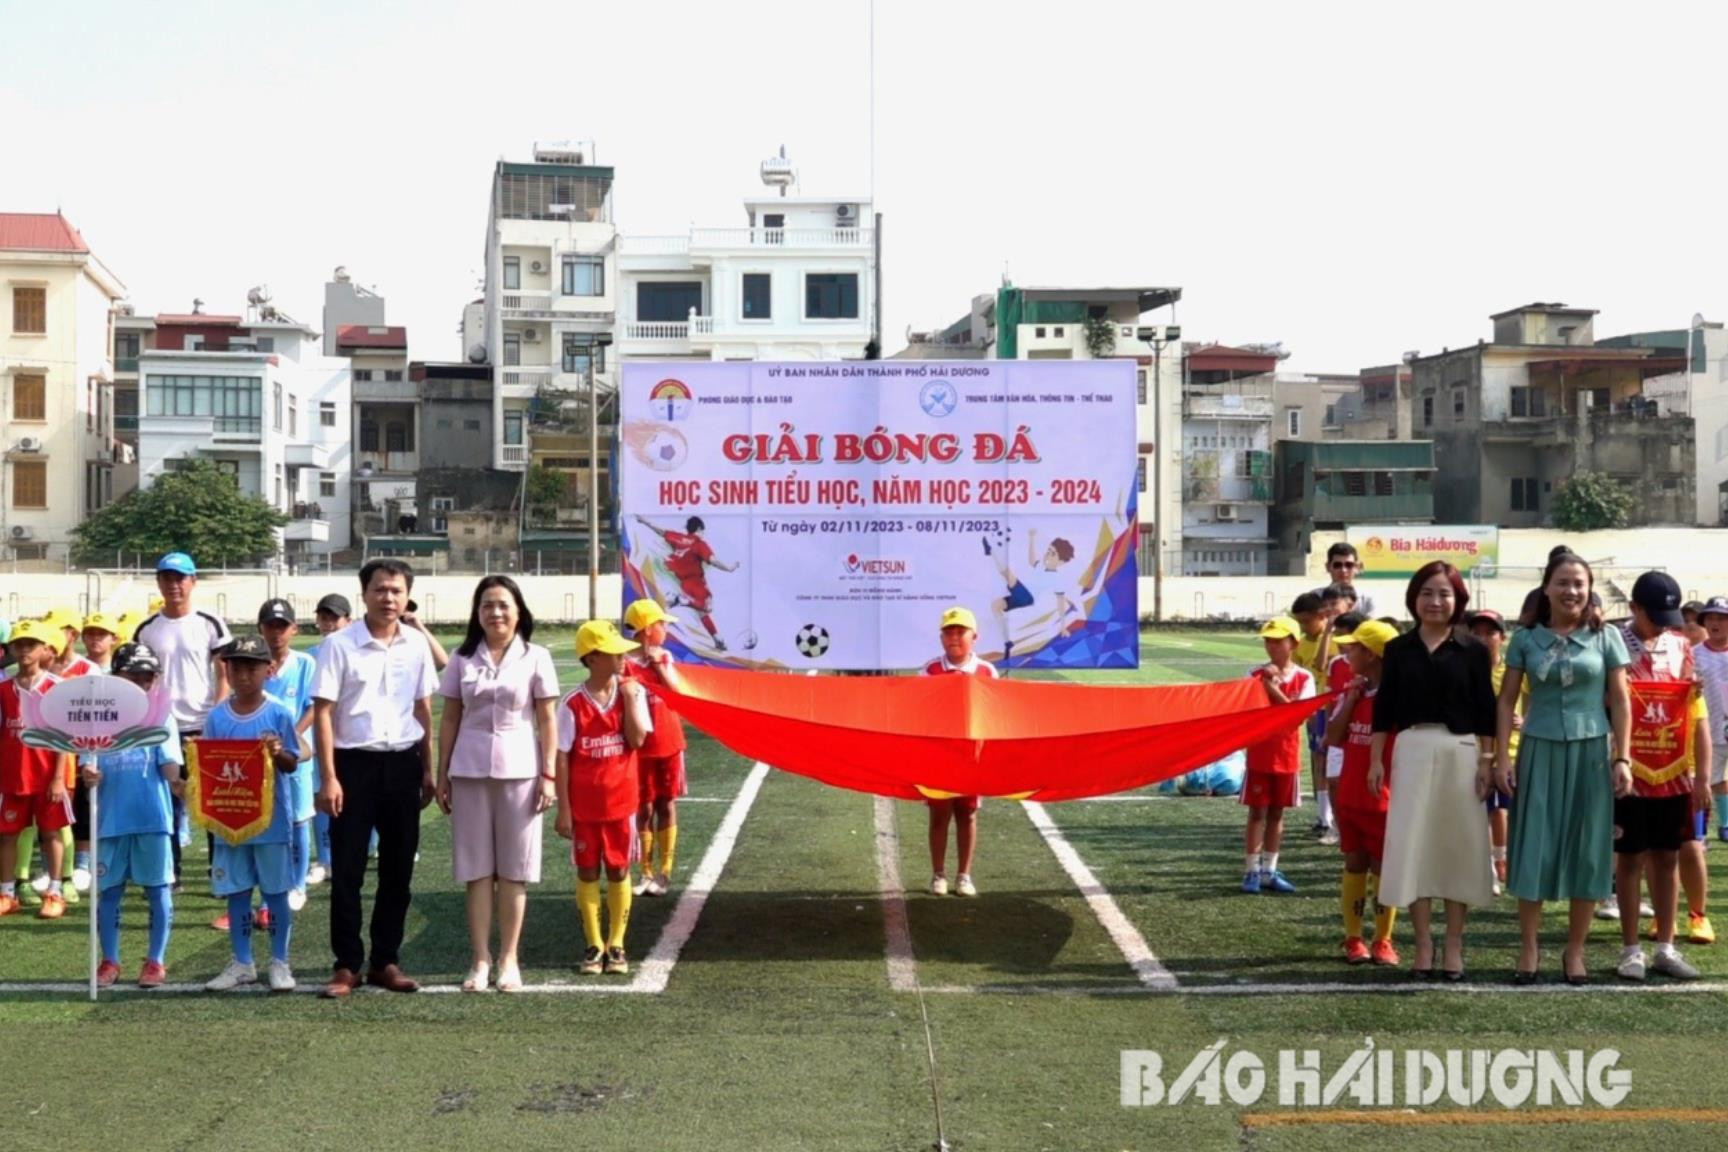 Thành phố Hải Dương tổ chức Giải bóng đá học sinh tiểu học